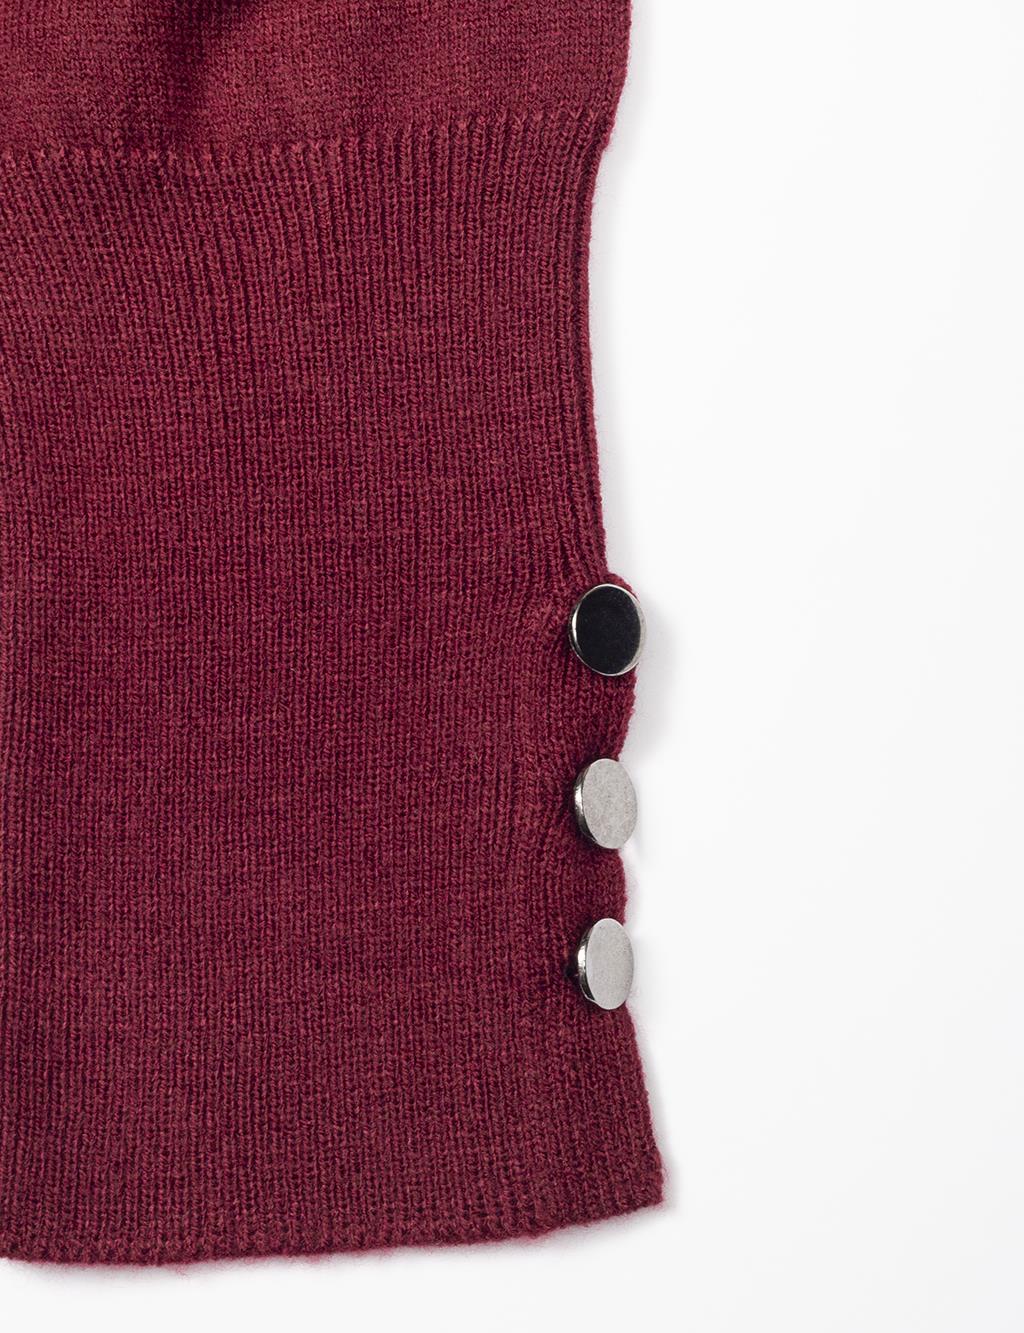 Turtleneck Basic Knitwear Tunic Claret Red